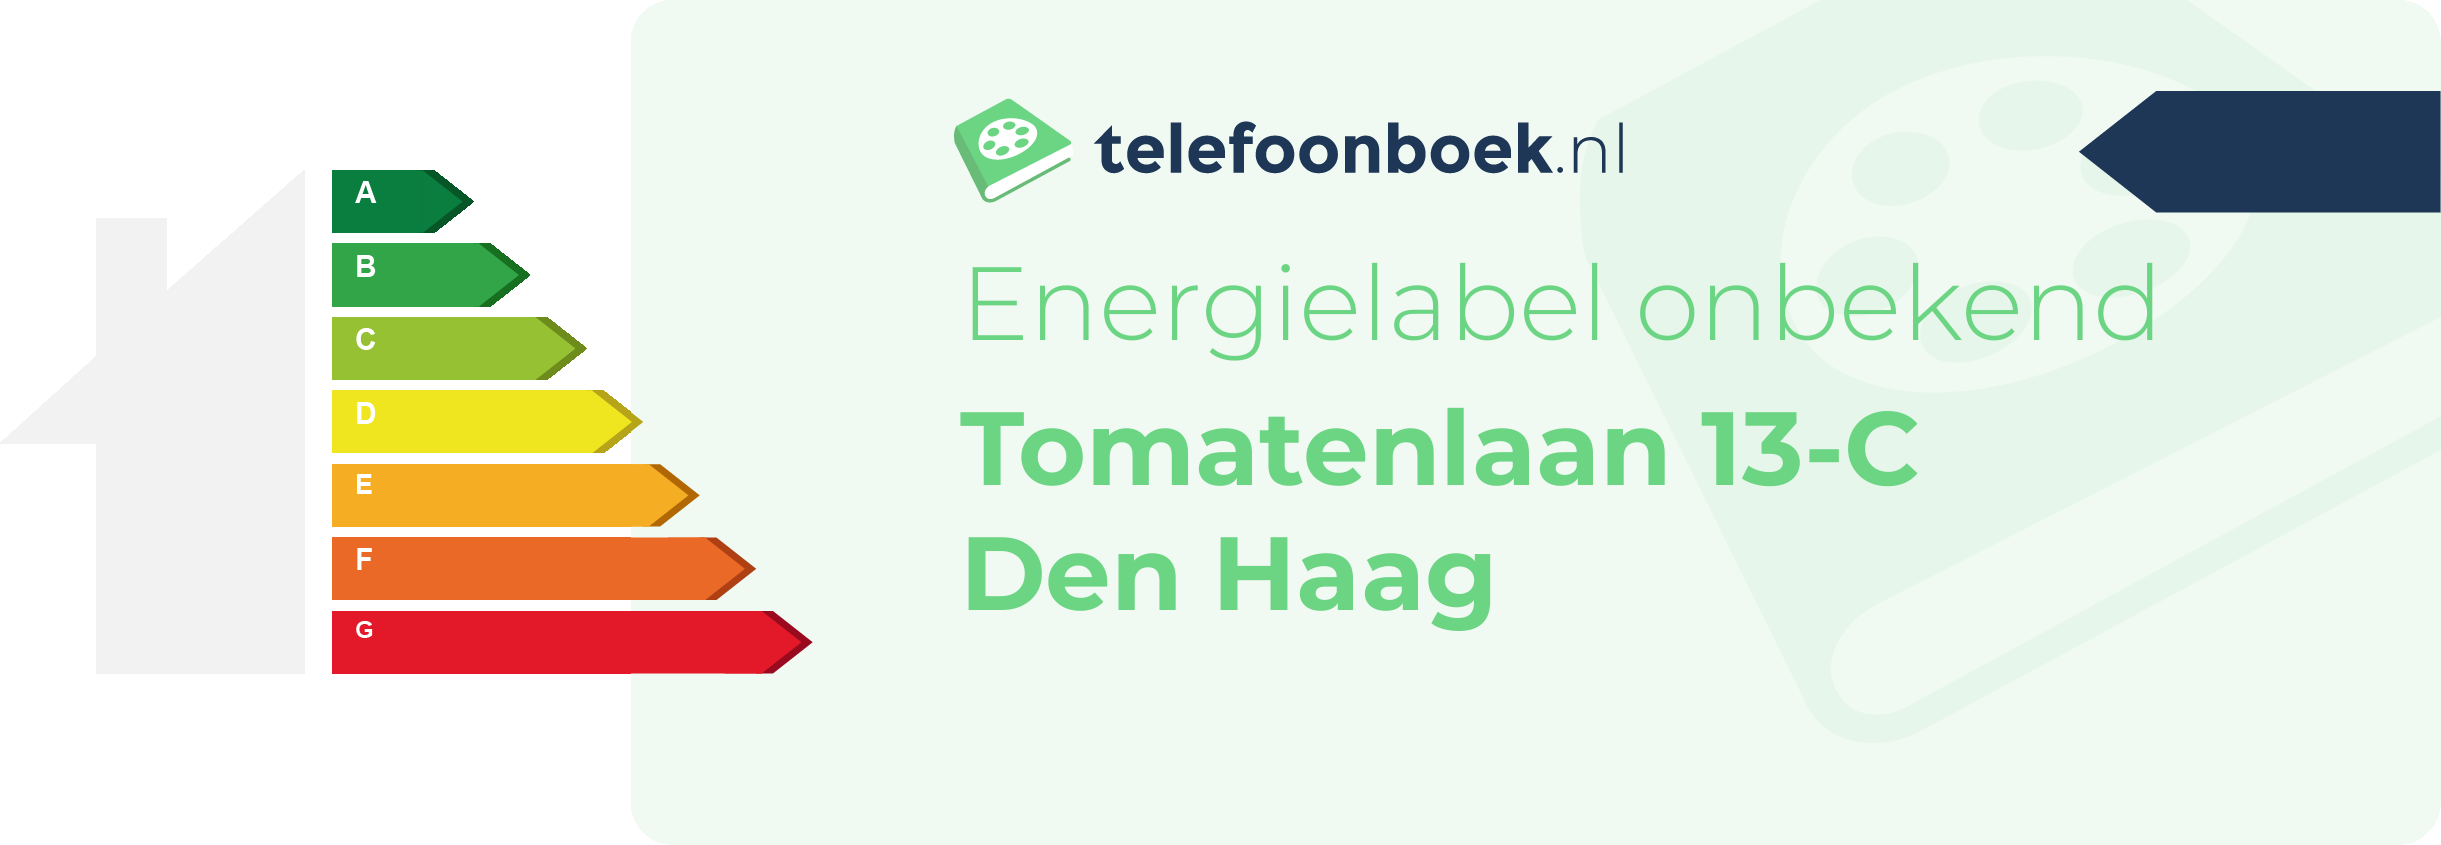 Energielabel Tomatenlaan 13-C Den Haag